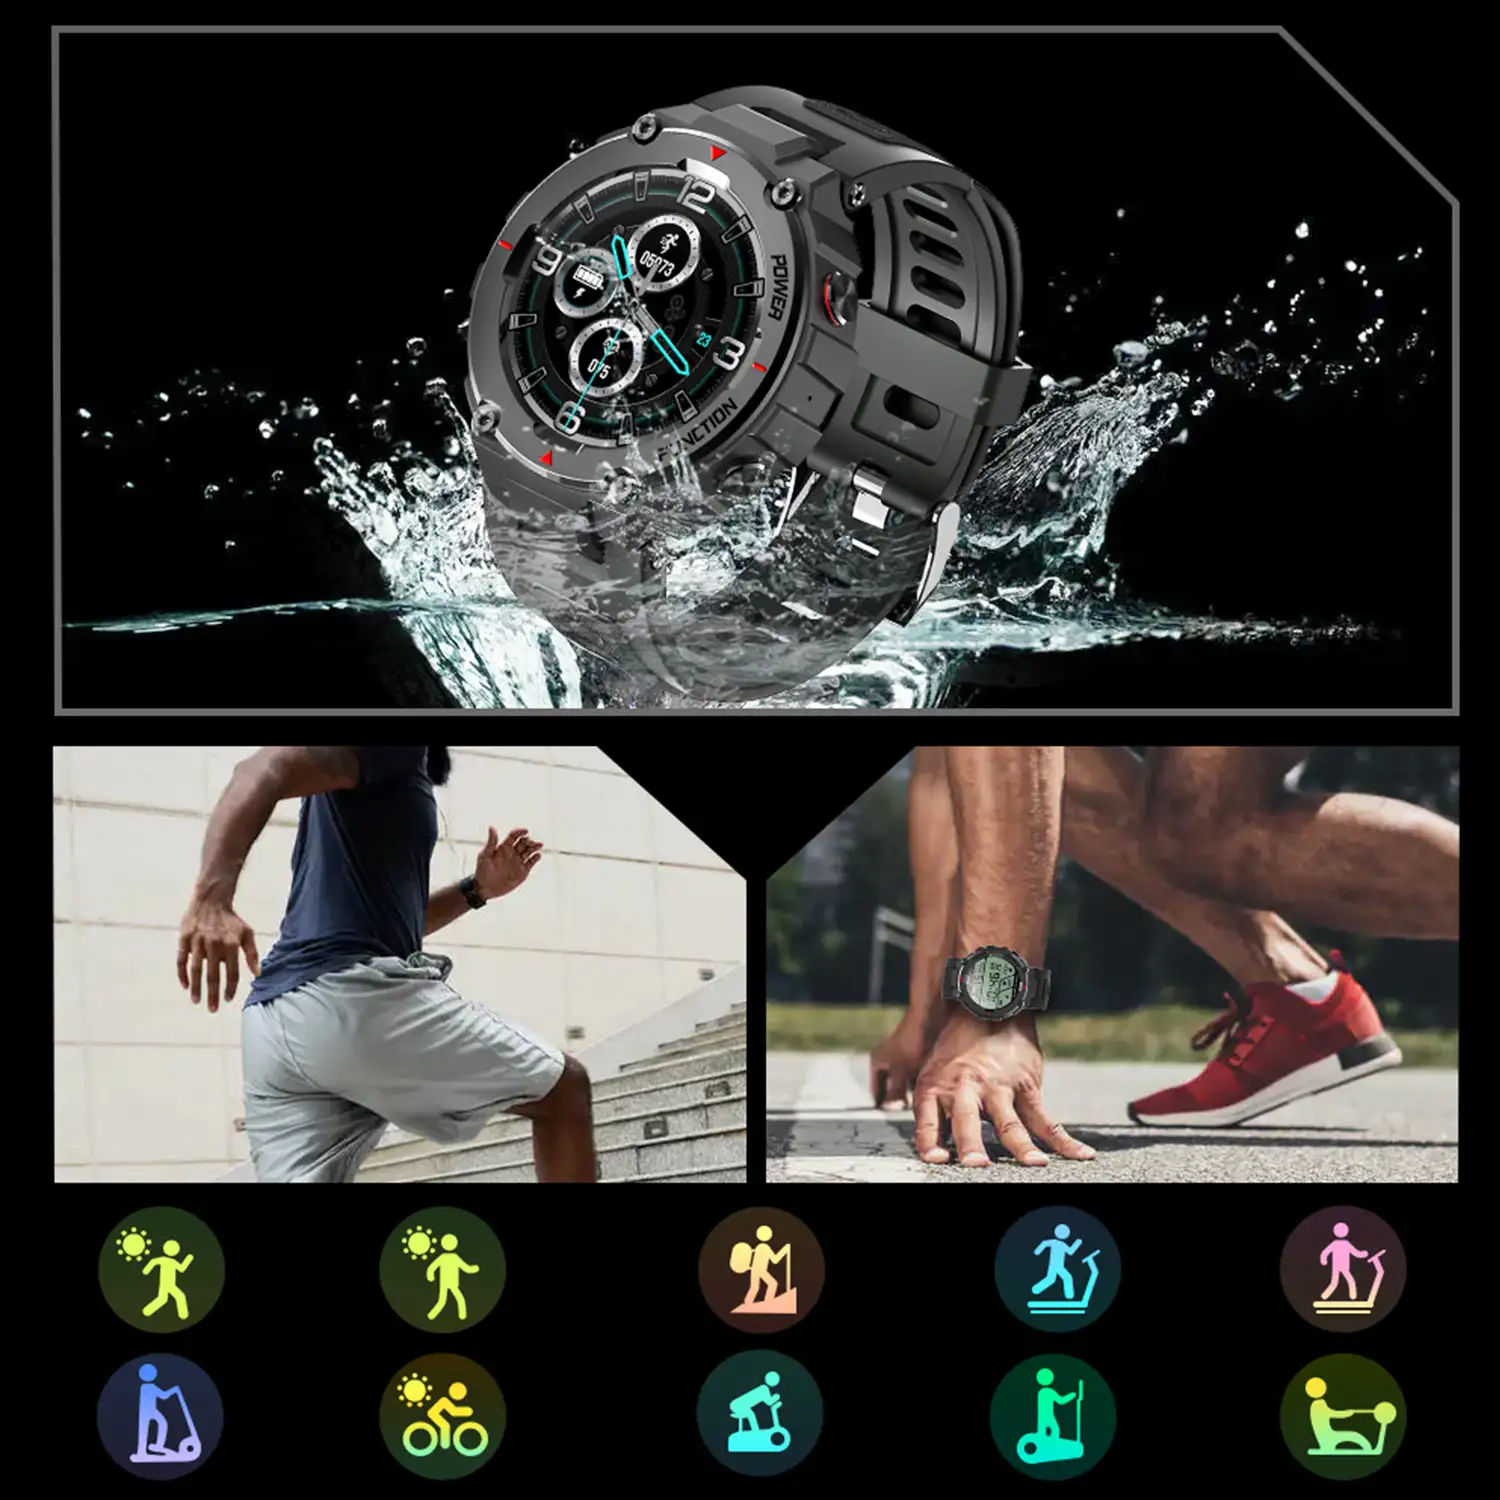 Smartwatch F26 outdoor. Sumergible 30 m, resistencia a temperaturas extremas. Reproductor musical y memoria interna, 10 modos deportivos.